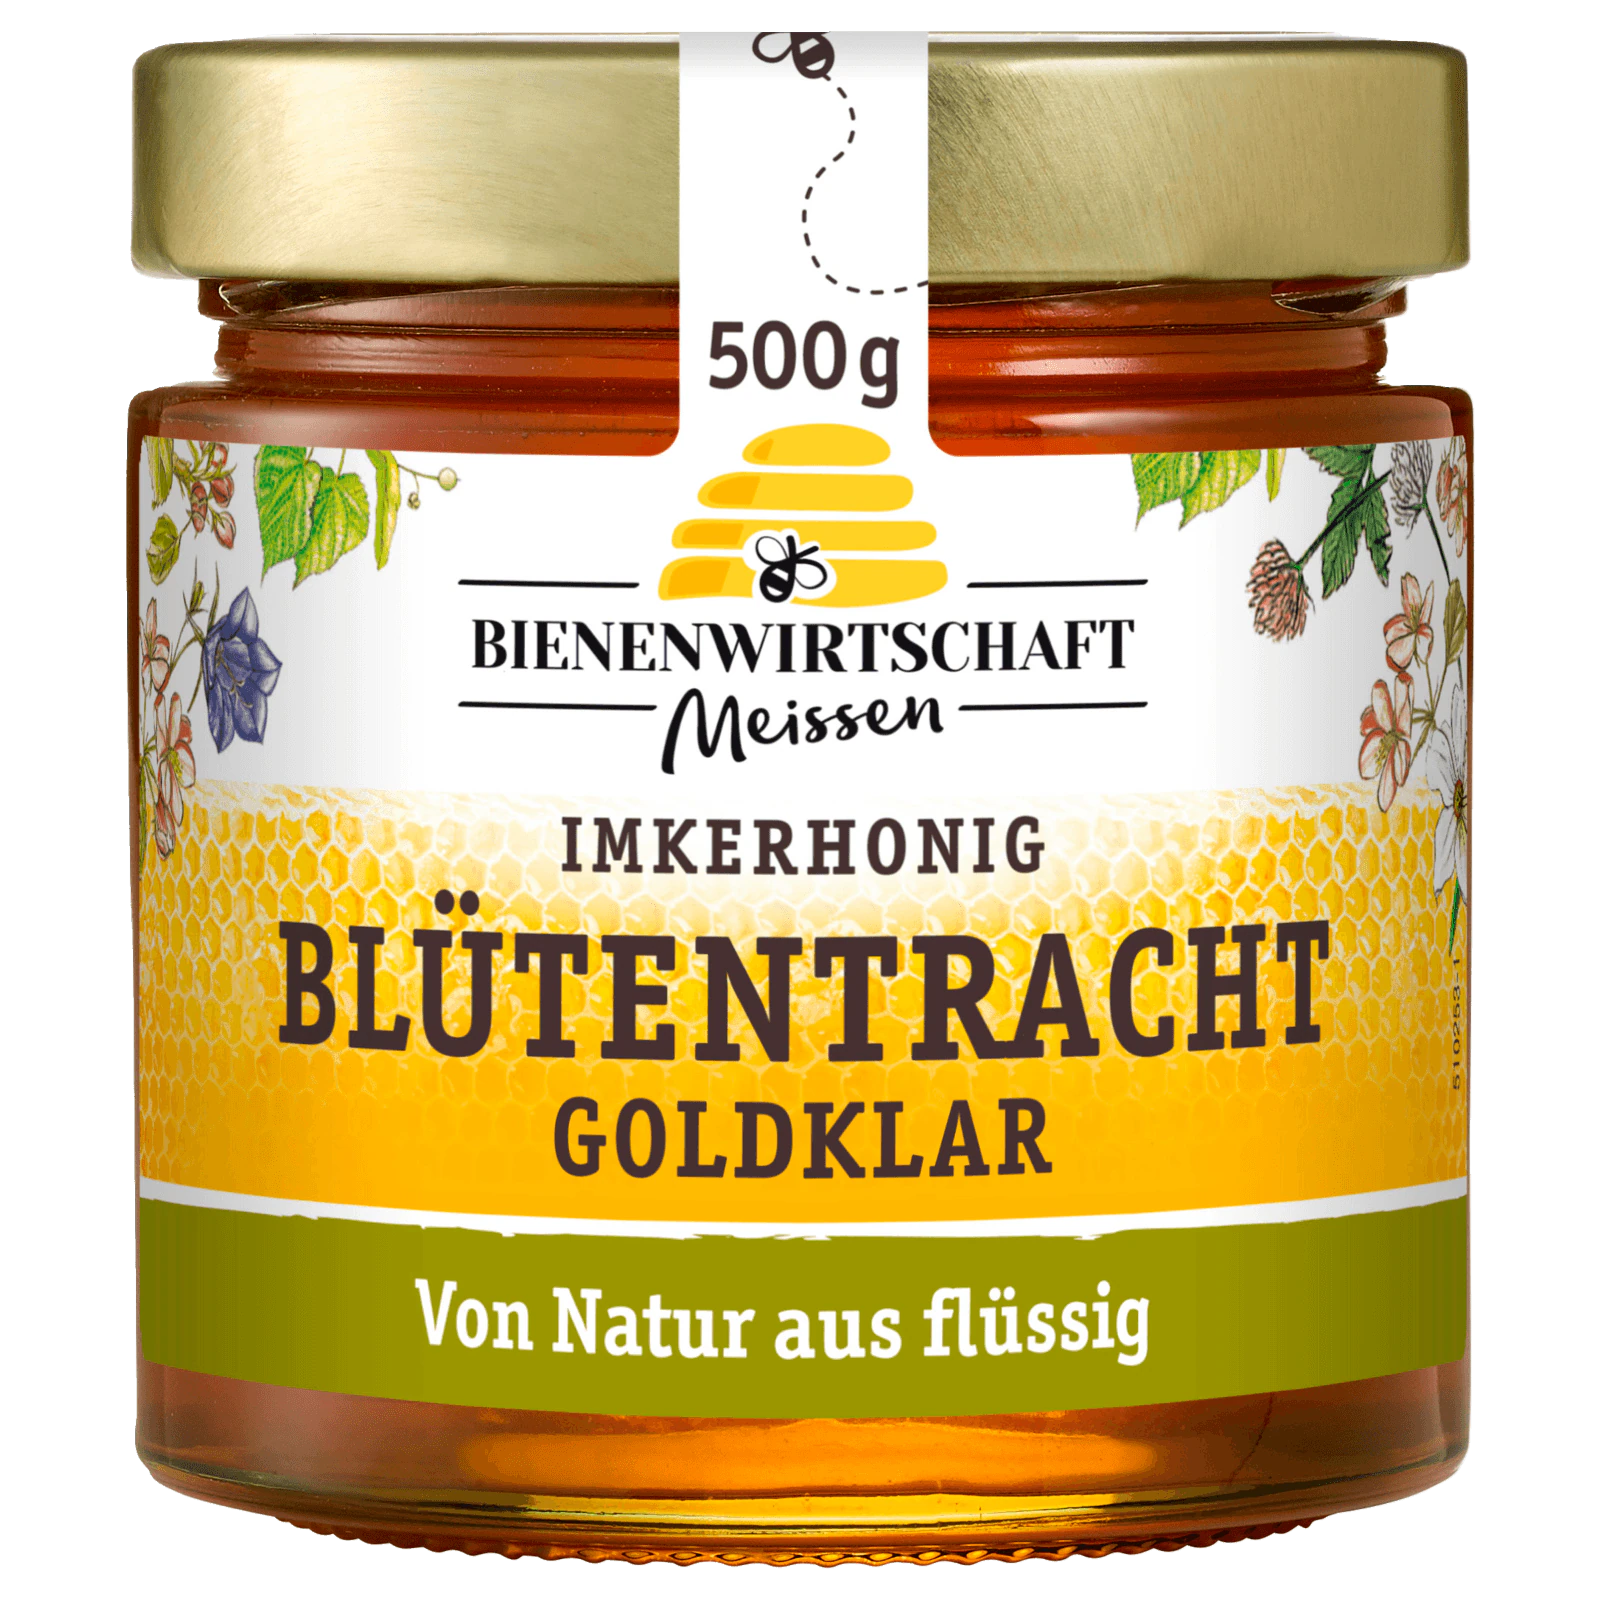 Bienenwirtschaft Meissen Imkerhonig goldklare Auslese 500g  für 4.99 EUR